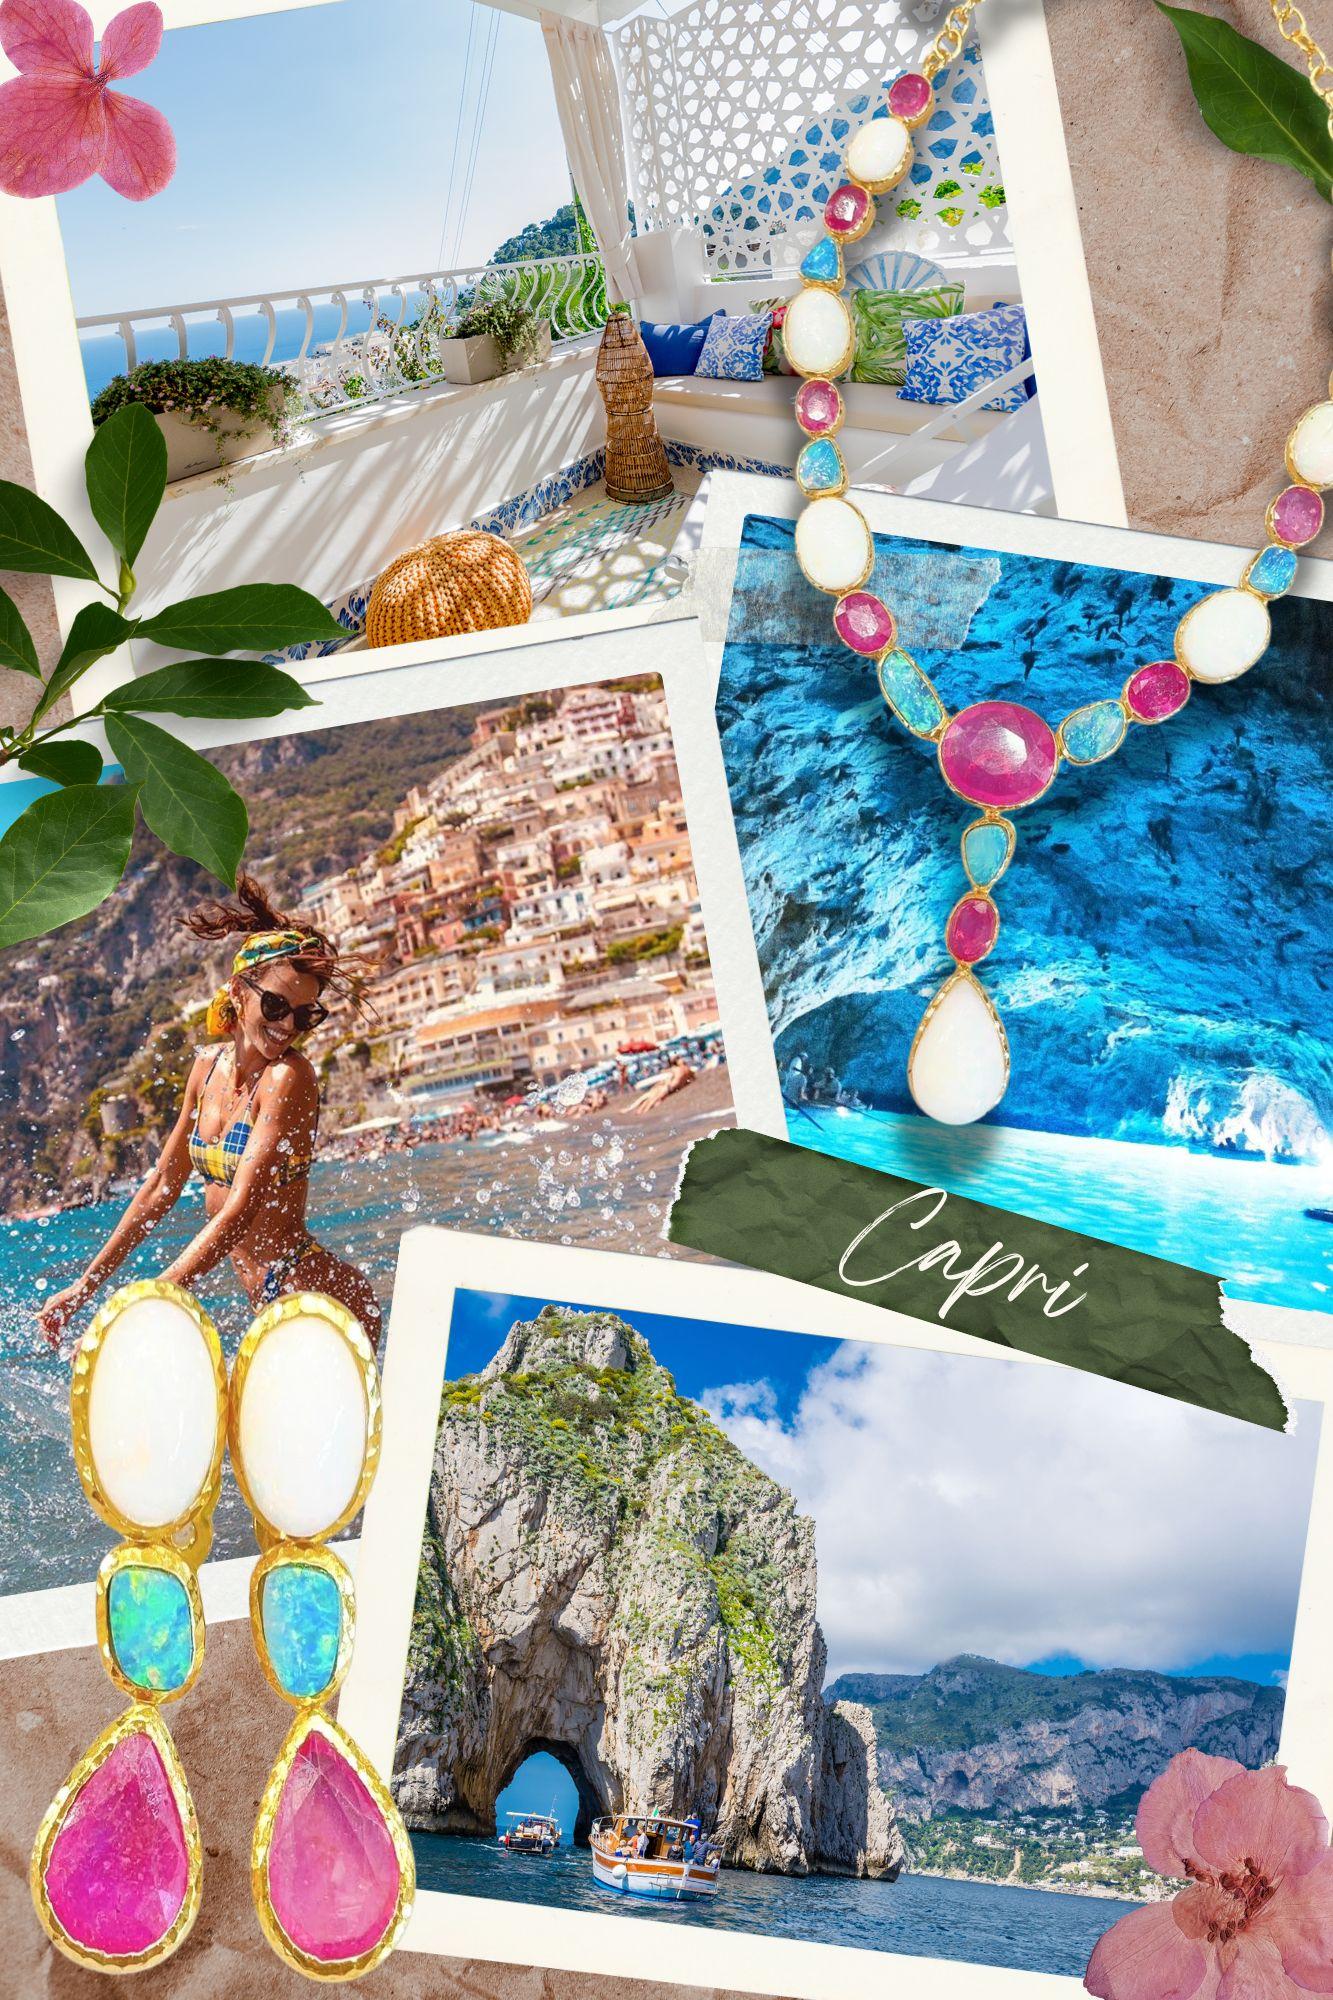 Bochic “Capri” Emerald, Ruby & Sapphire Earrings Set in 22k Gold & Silver For Sale 4